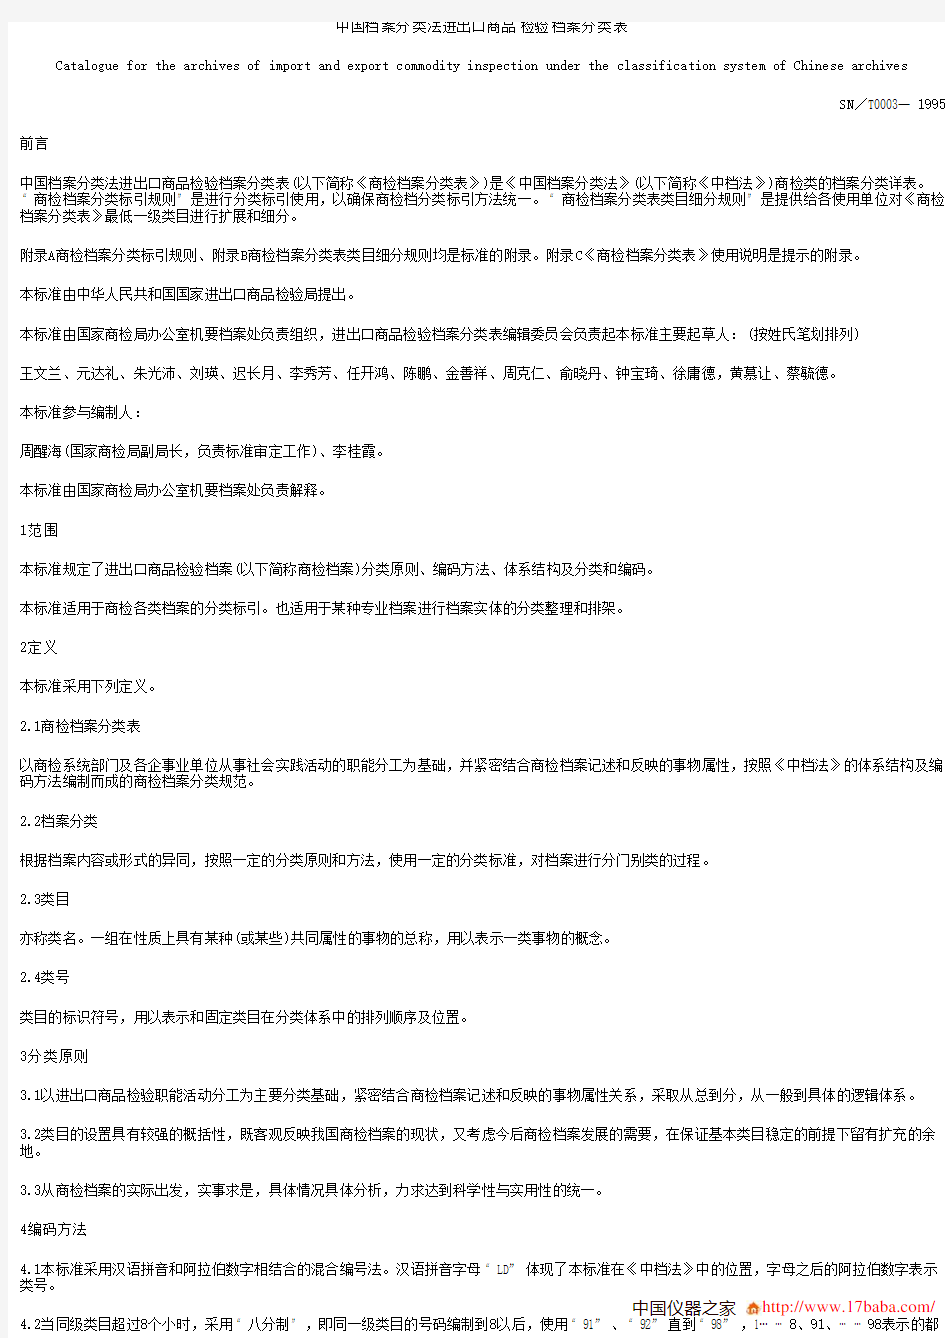 中国档案分类法进出口商品检验档案分类表